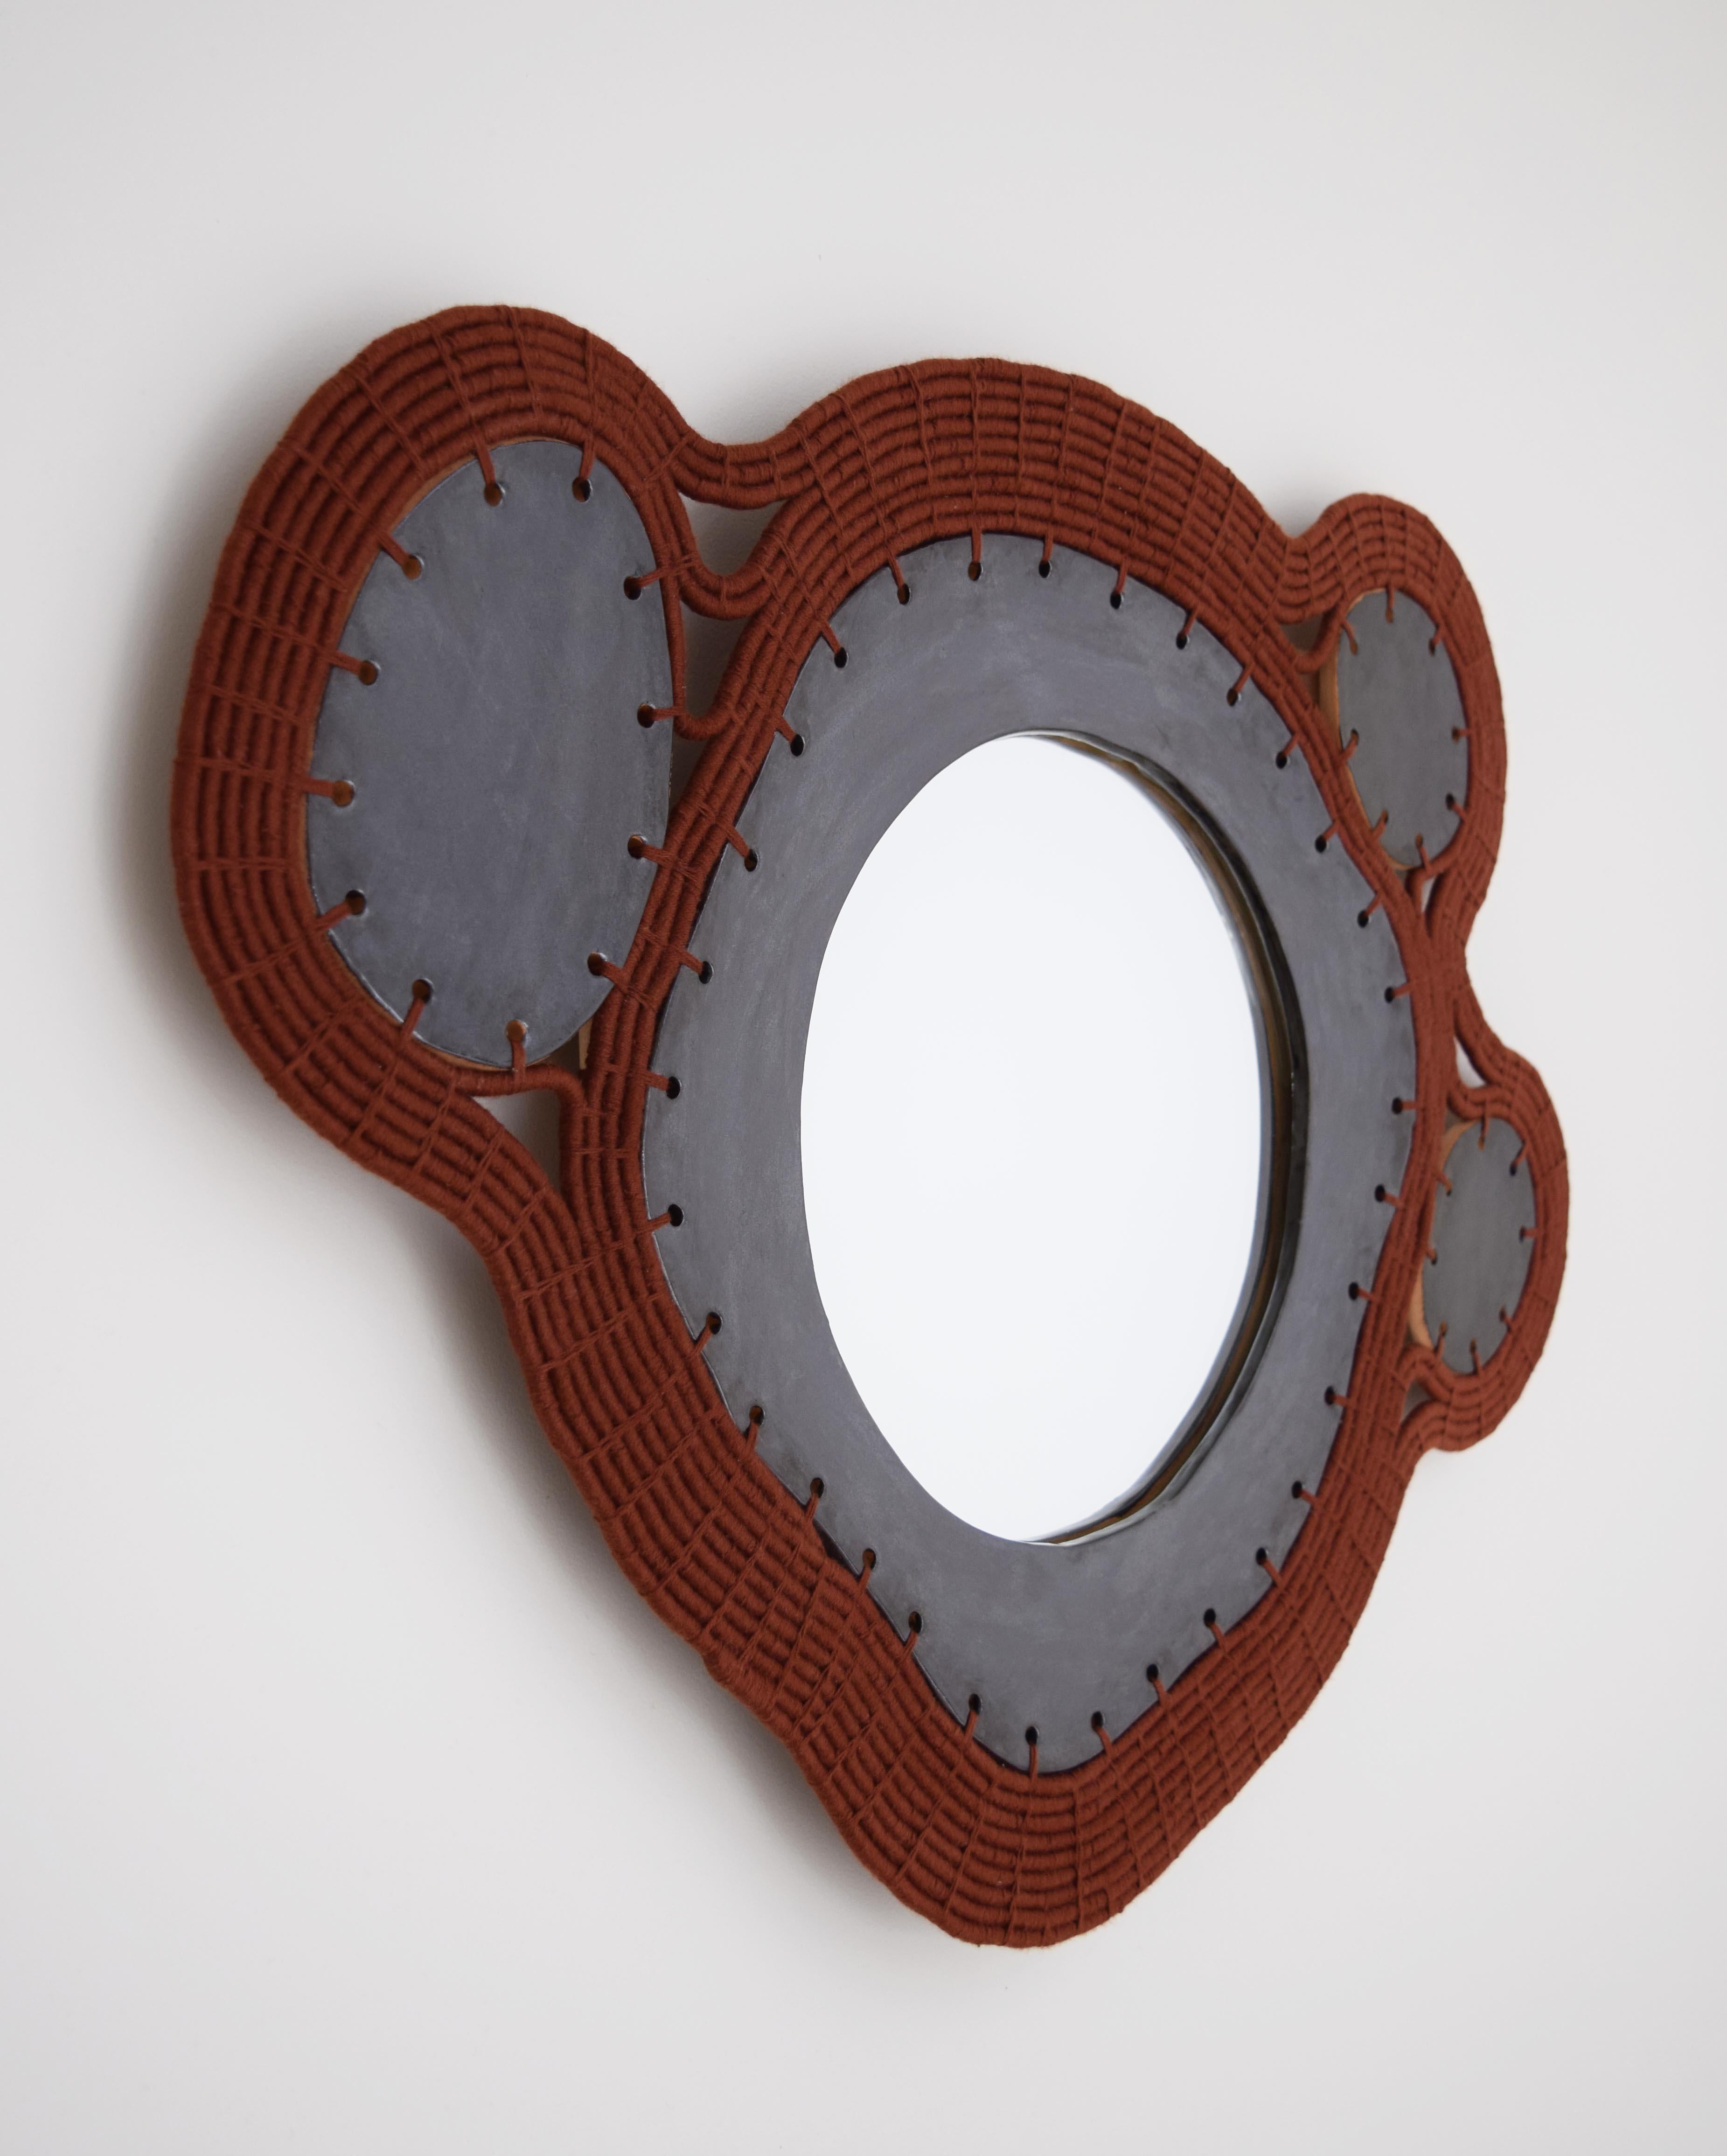 Spiegel #794 von Karen Gayle Tinney.

Einzigartig - ohne Vorlaufzeit erhältlich.

Spiegel mit einem handgeformten Rahmen aus Steinzeug, schwarz glasiert. Außenrahmen aus gewebter rostbrauner Baumwolle mit eingelegten Keramikplatten. Schwarzer Filz